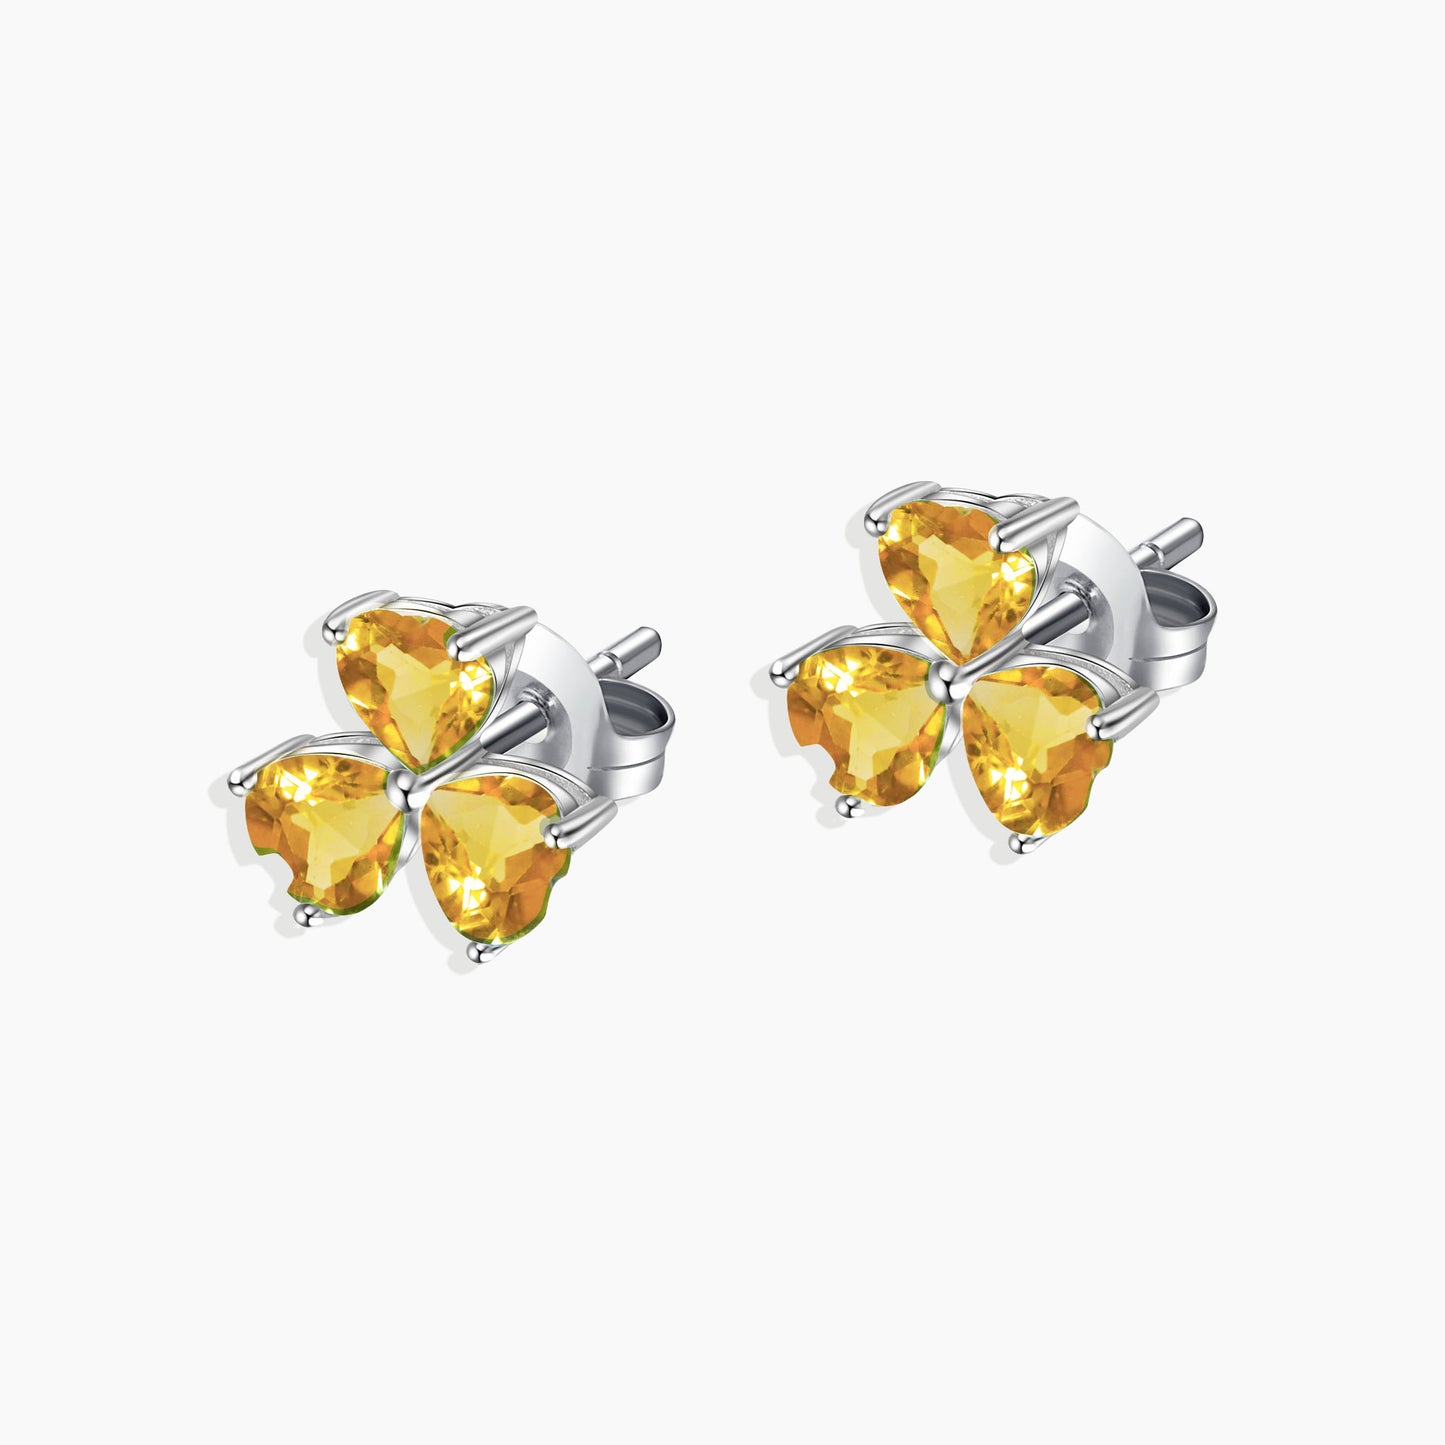 Flower Shape Stud Earrings in Sterling Silver -  Citrine